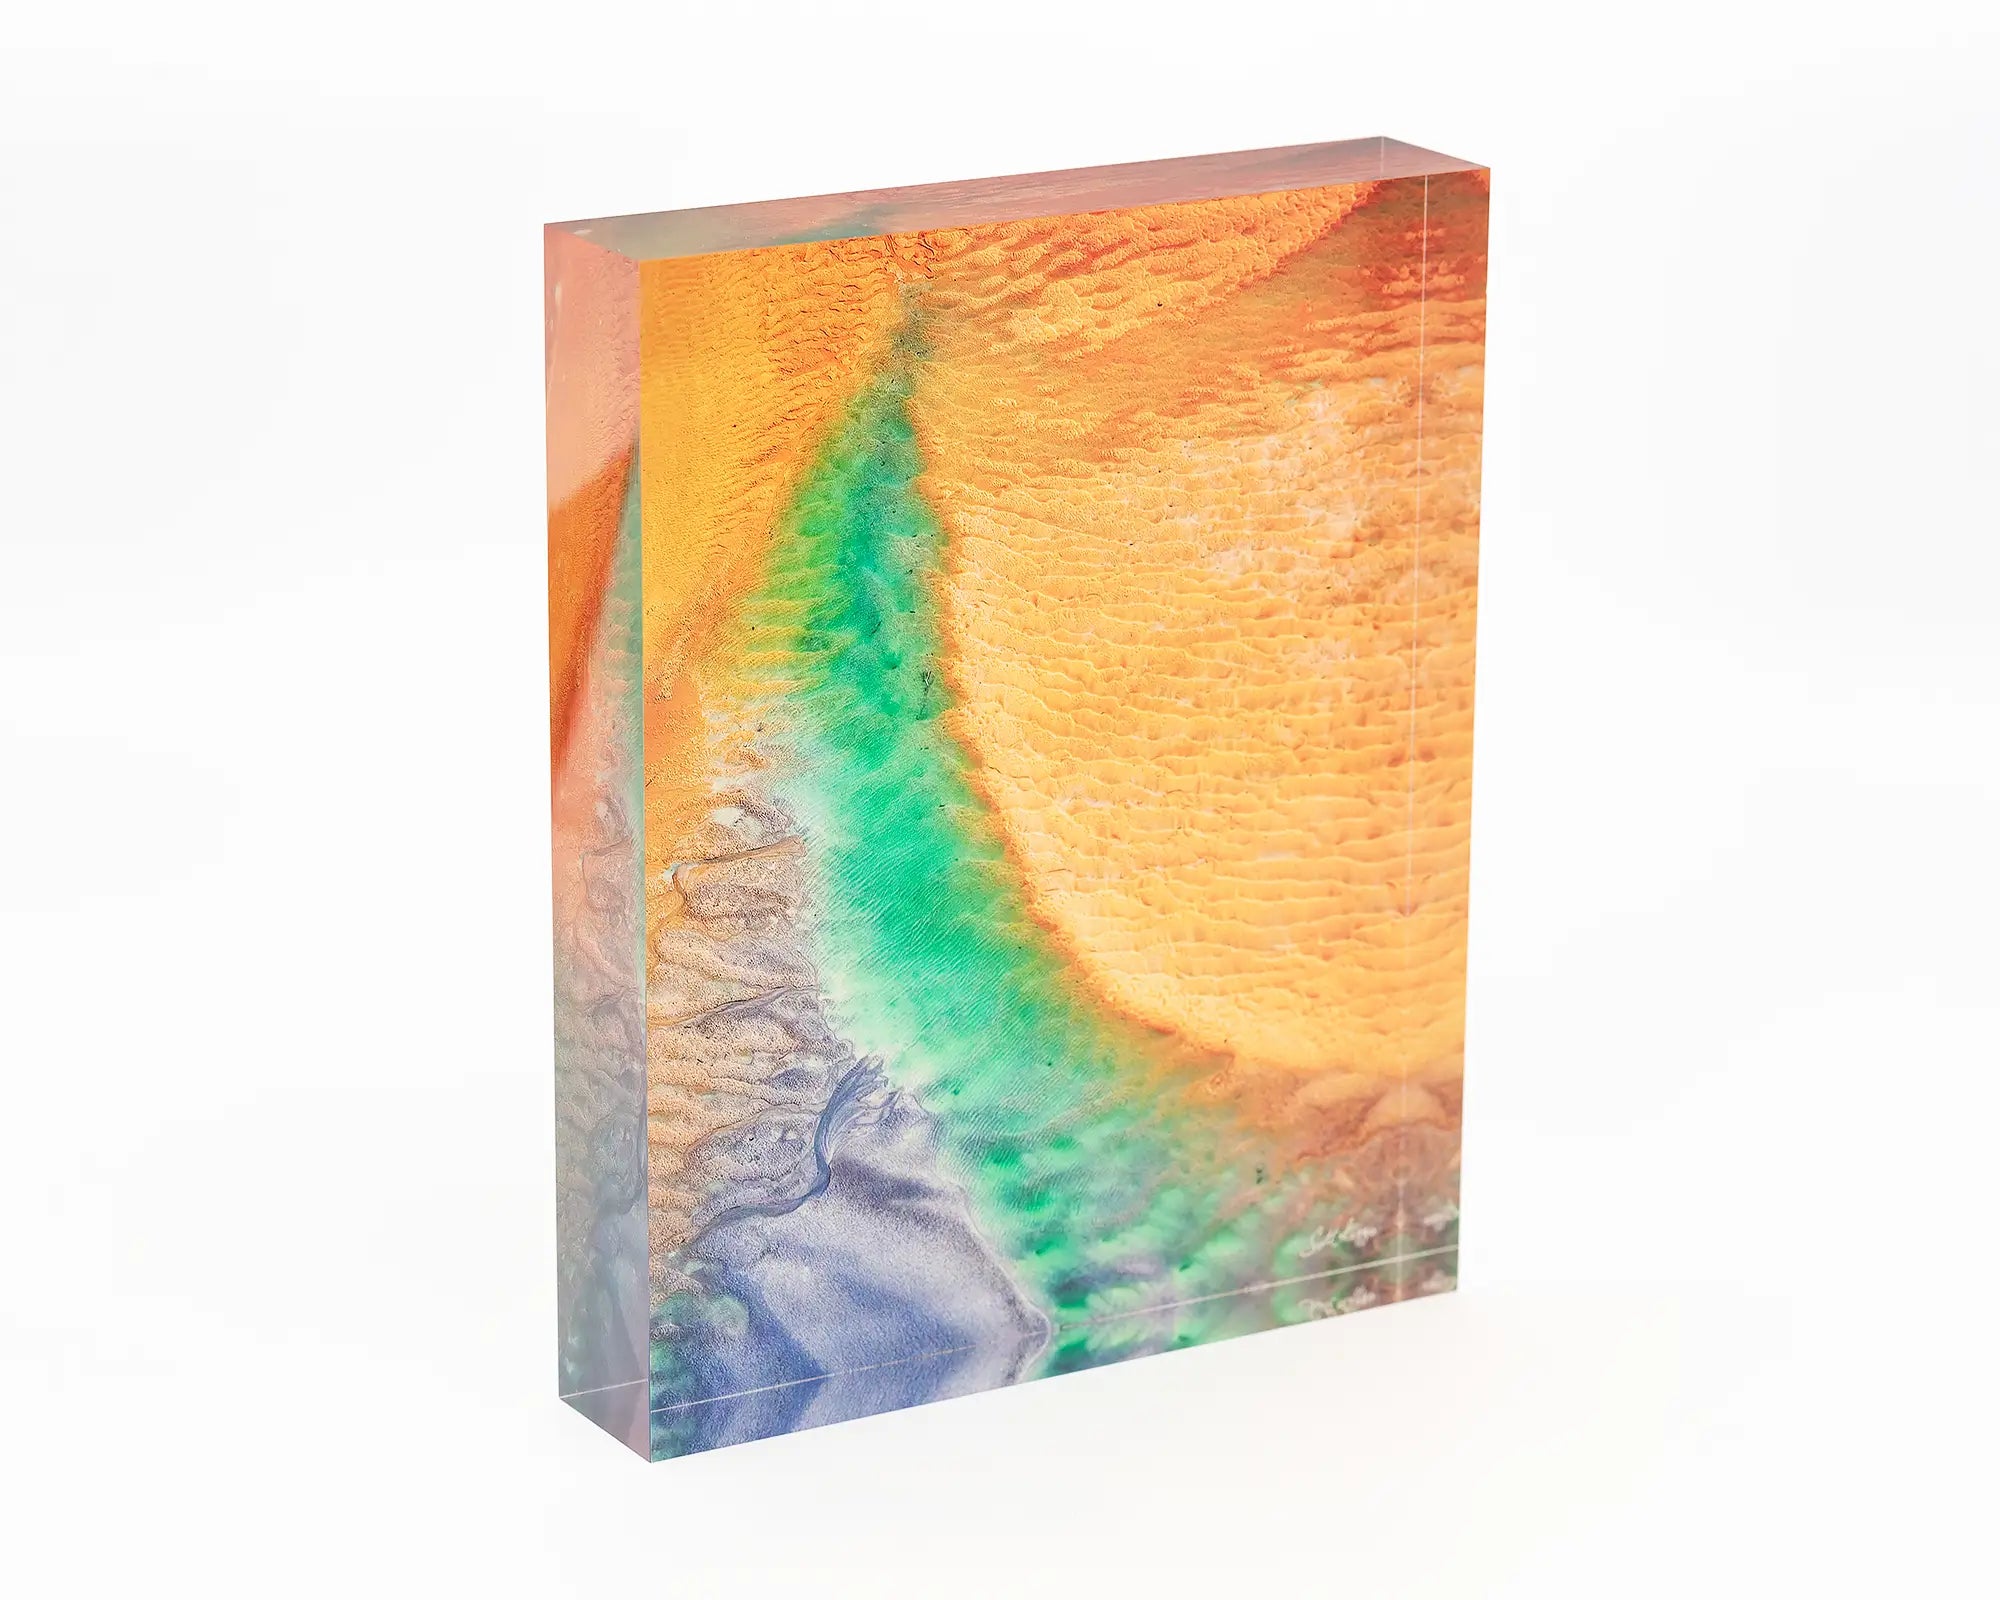 Opal Illusion acrylic block - Roebuck Bay tidal flats artwork. 